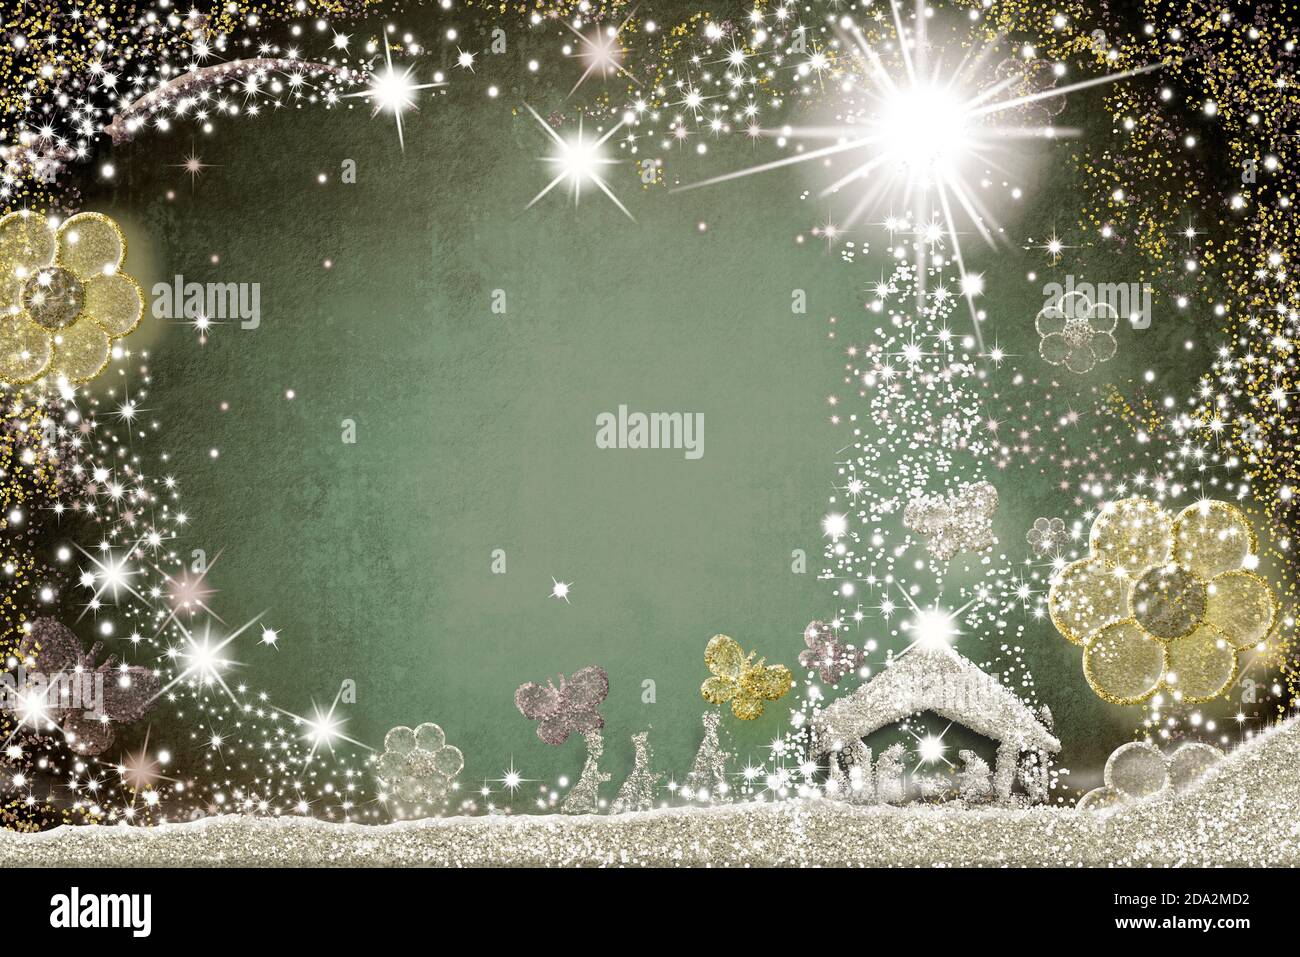 Cartes de voeux pour la scène de Noël magique, dessin abstrait à main levée de la scène de Nativité et trois Sages avec fleurs et papillons, argent Banque D'Images